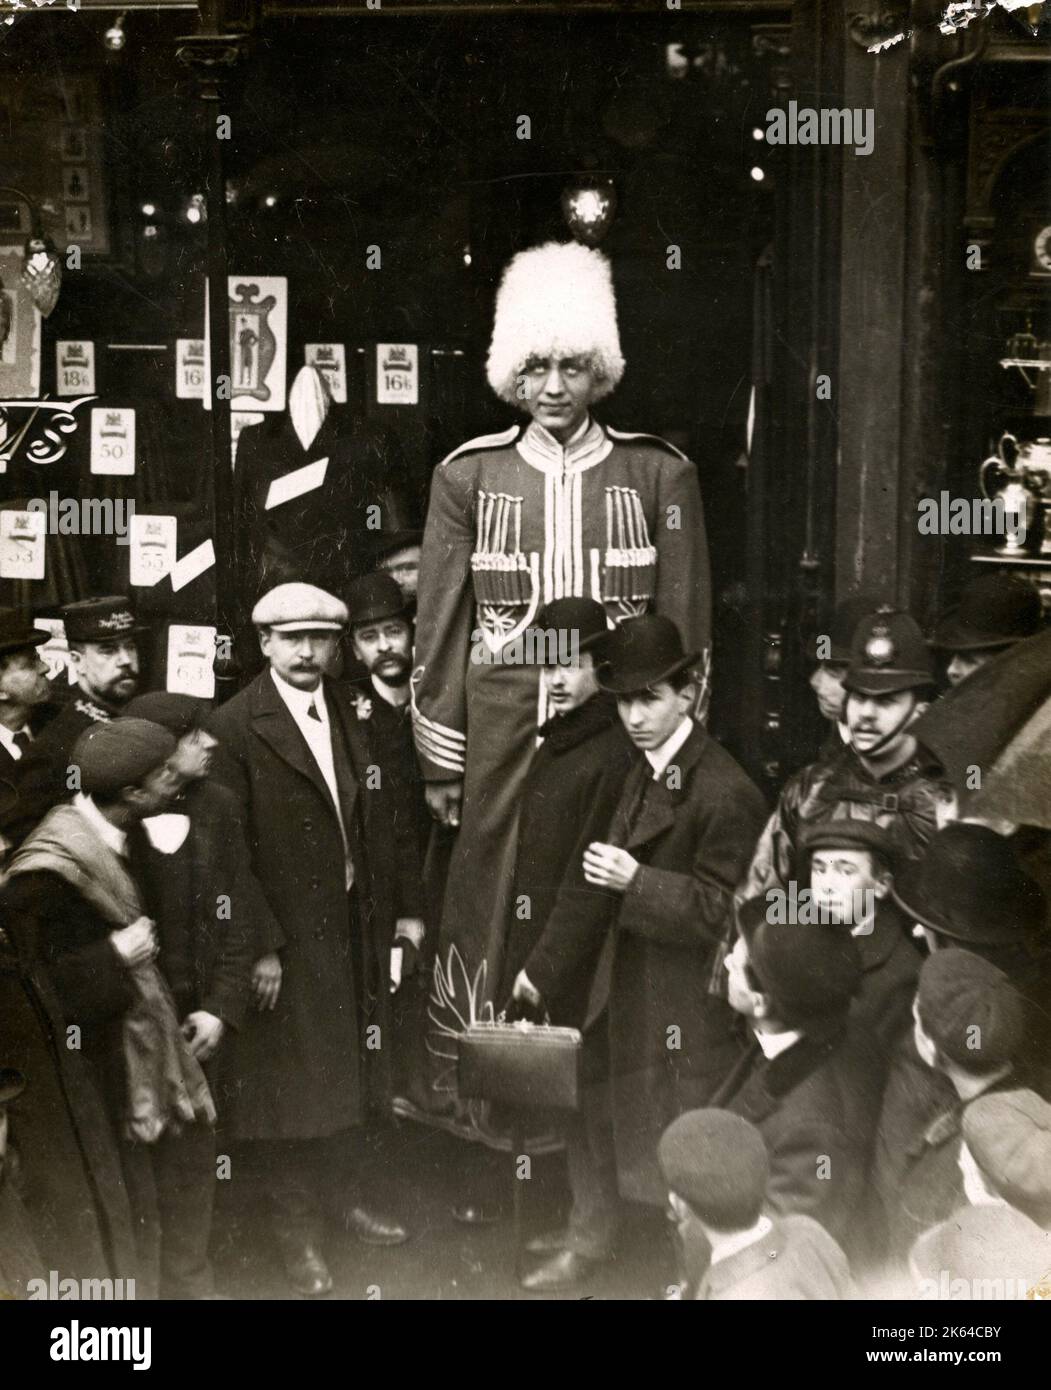 Ivan Markoff, qui était connu comme un cosaque russe géant dans le début du xxe siècle. Markoff a vu à Londres, où la légende dit qu'il était équipé d'un nouveau costume. Il était réputé pour être 9ft de haut. Banque D'Images